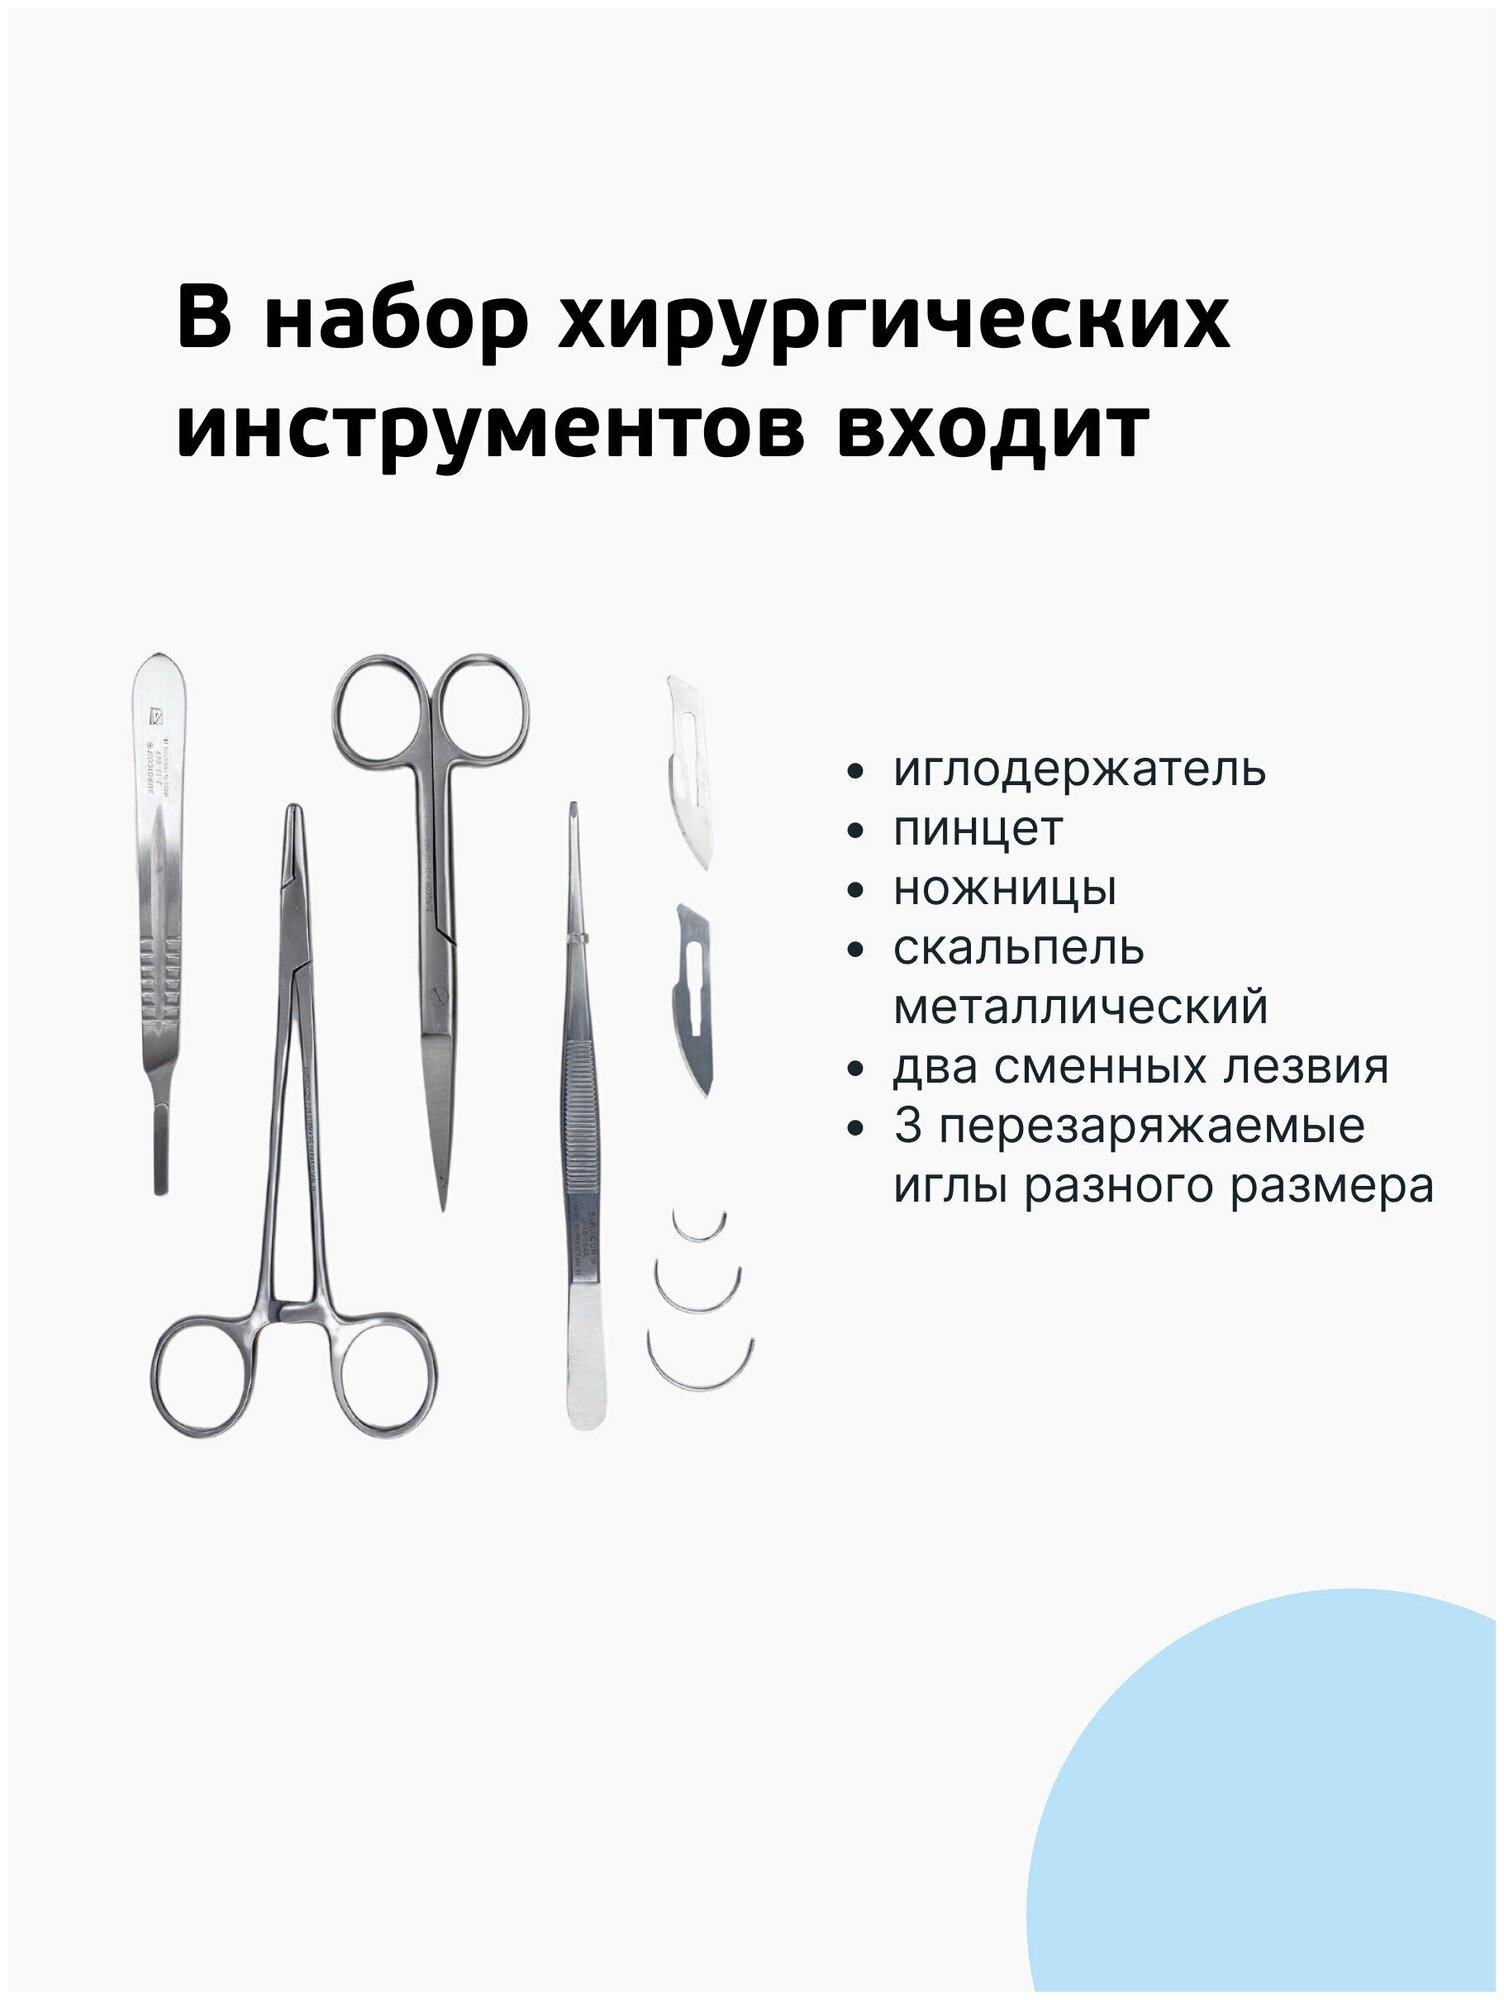 Хирургический набор / иглодержатель / набор хирургических инструментов / хирургический тренажер / хирургические иглы